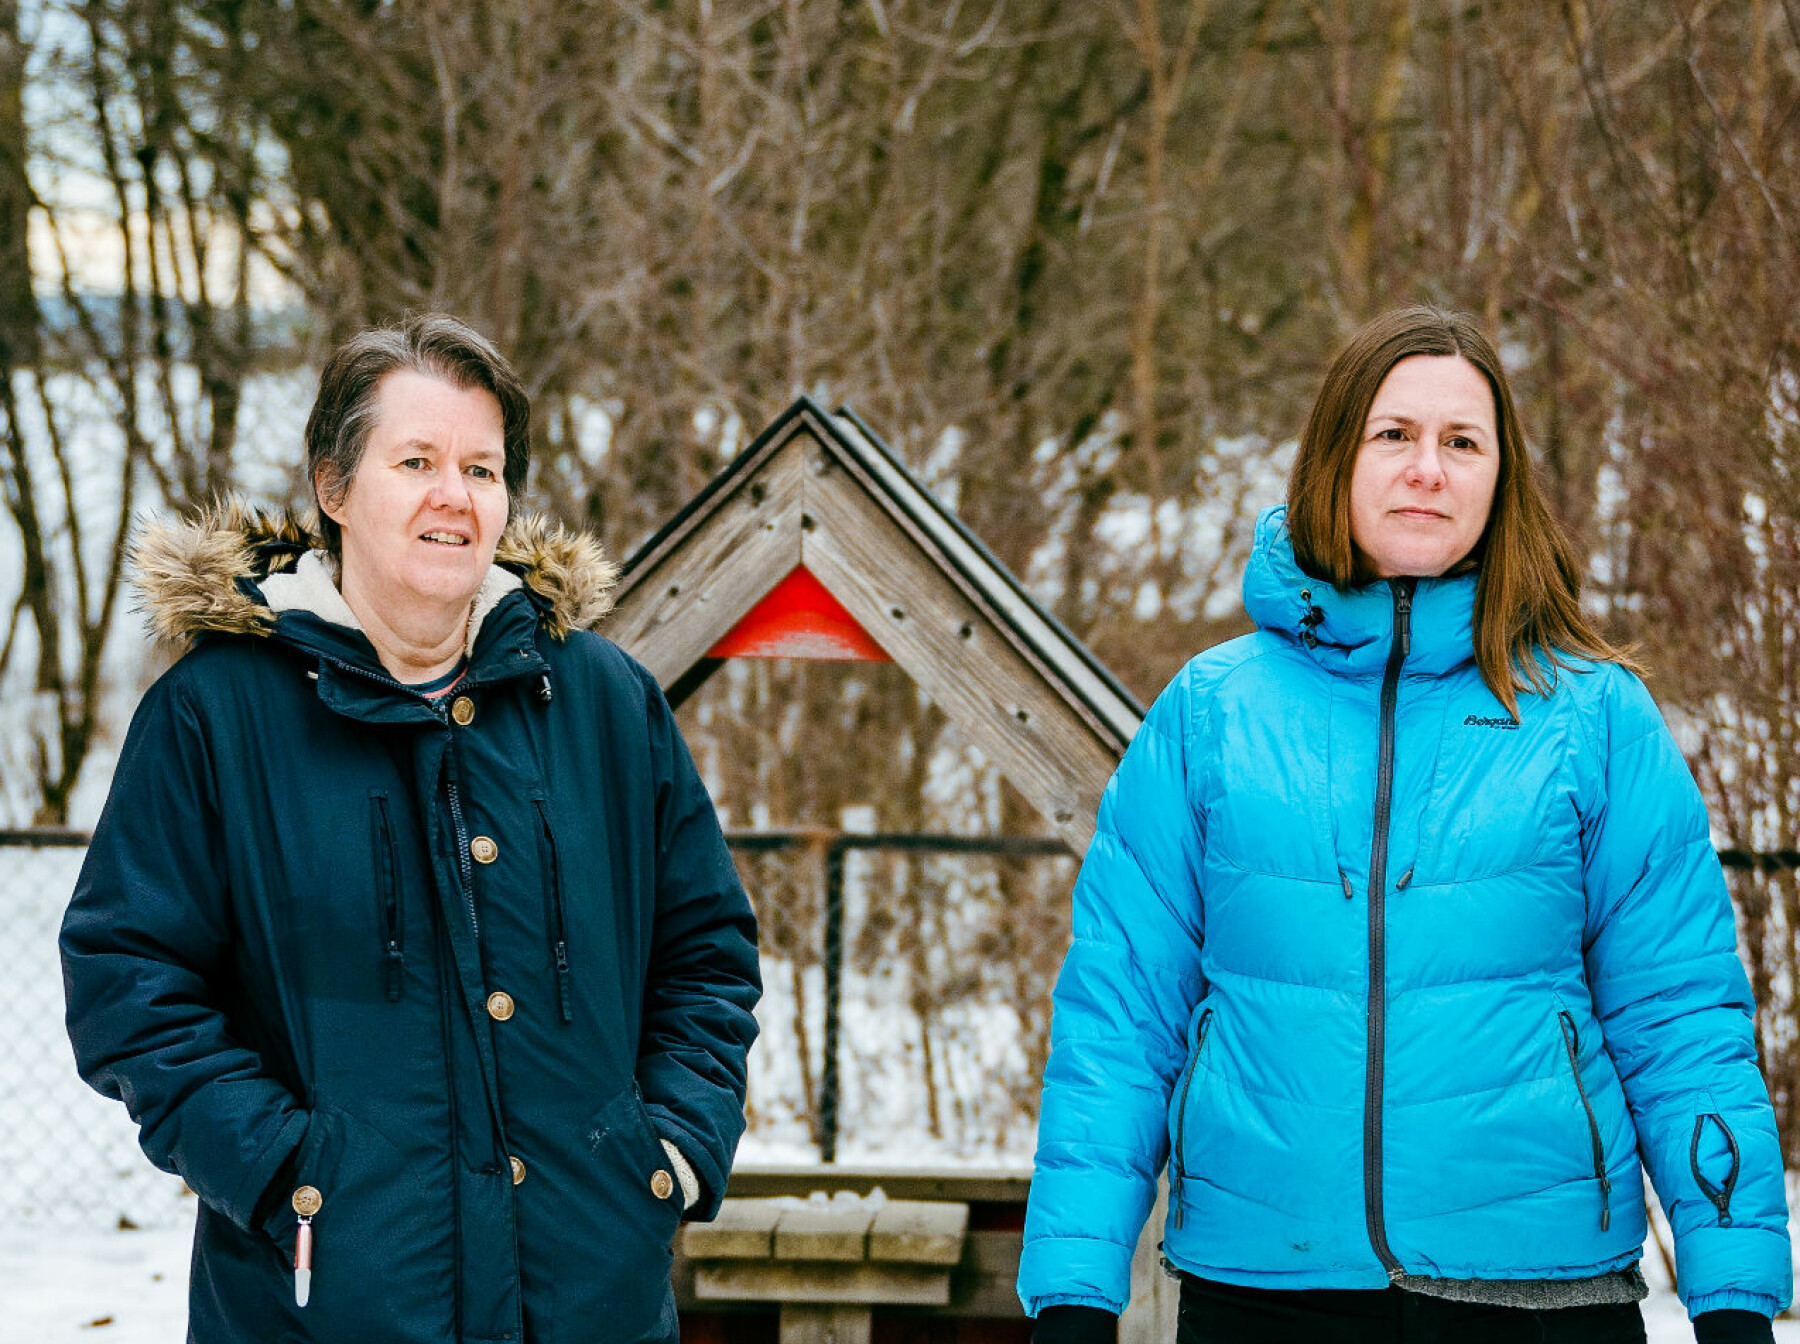 Oslo 18. januar 2022. Kurland barnehage på Furuset i Oslo. 3 av 10 ansatte i barnehagen har fått long-covid. To av dem er Kelly Hunter (54) og Marianne Falla (42).FOTO: JOAKIM S. ENGER